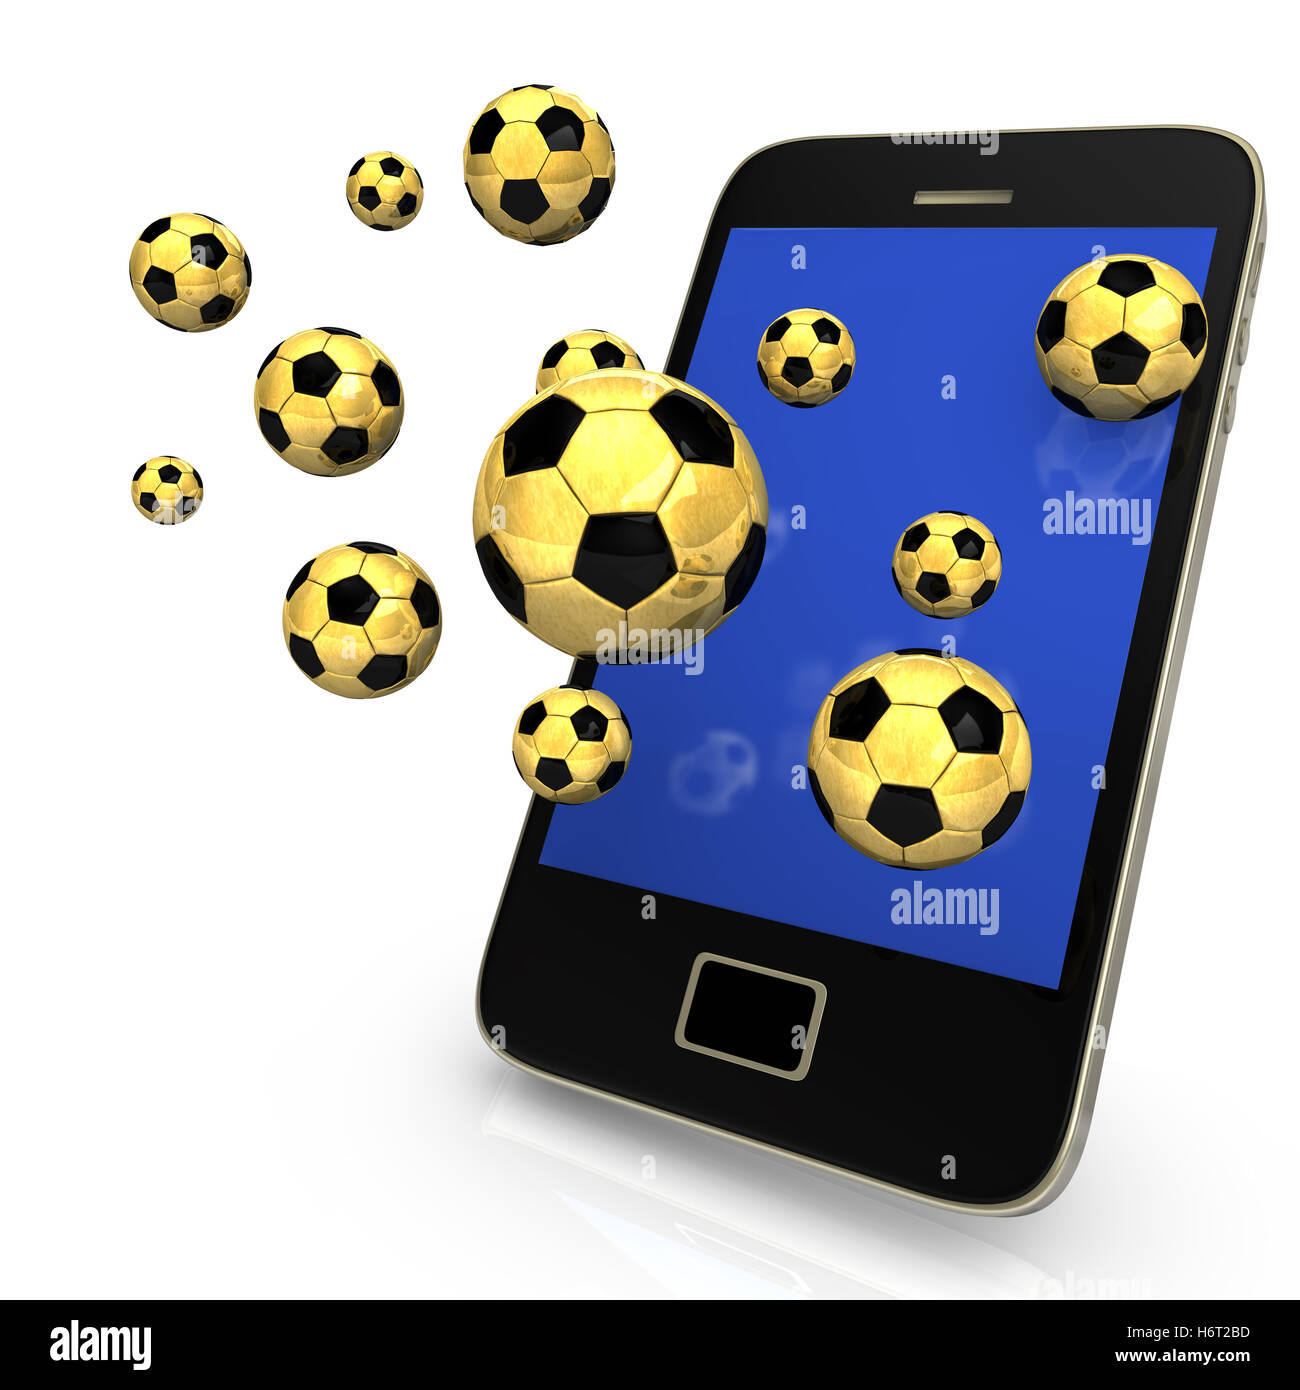 Numero di telefono sport sport news mobile cellular soccer football smartphone applicazione blu gioco tornei giocando Foto Stock